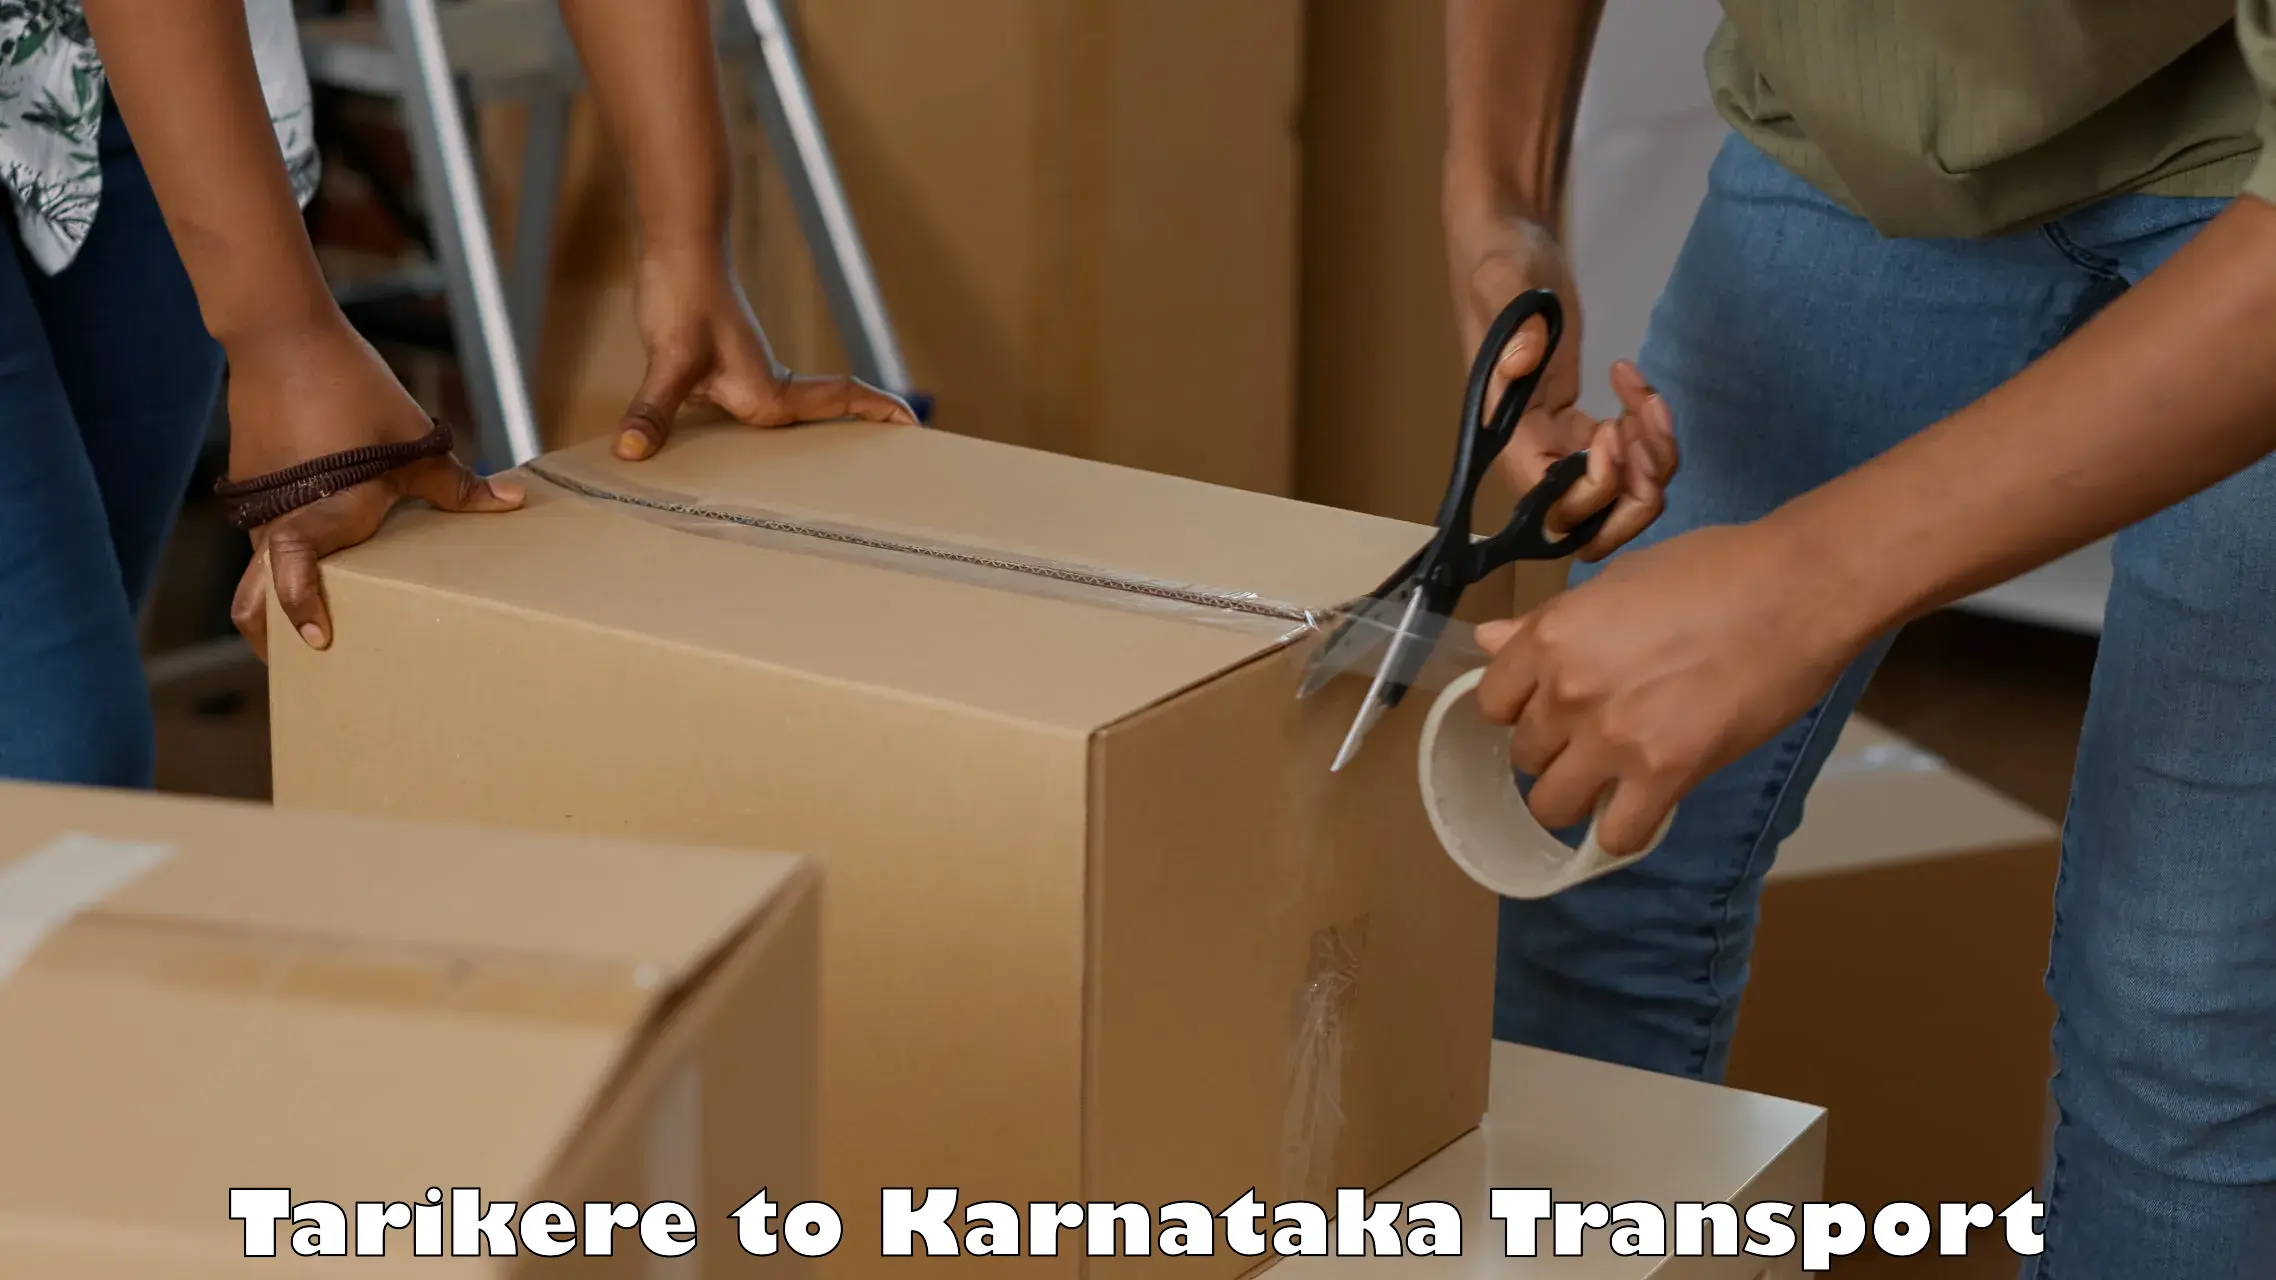 Truck transport companies in India Tarikere to Karnataka